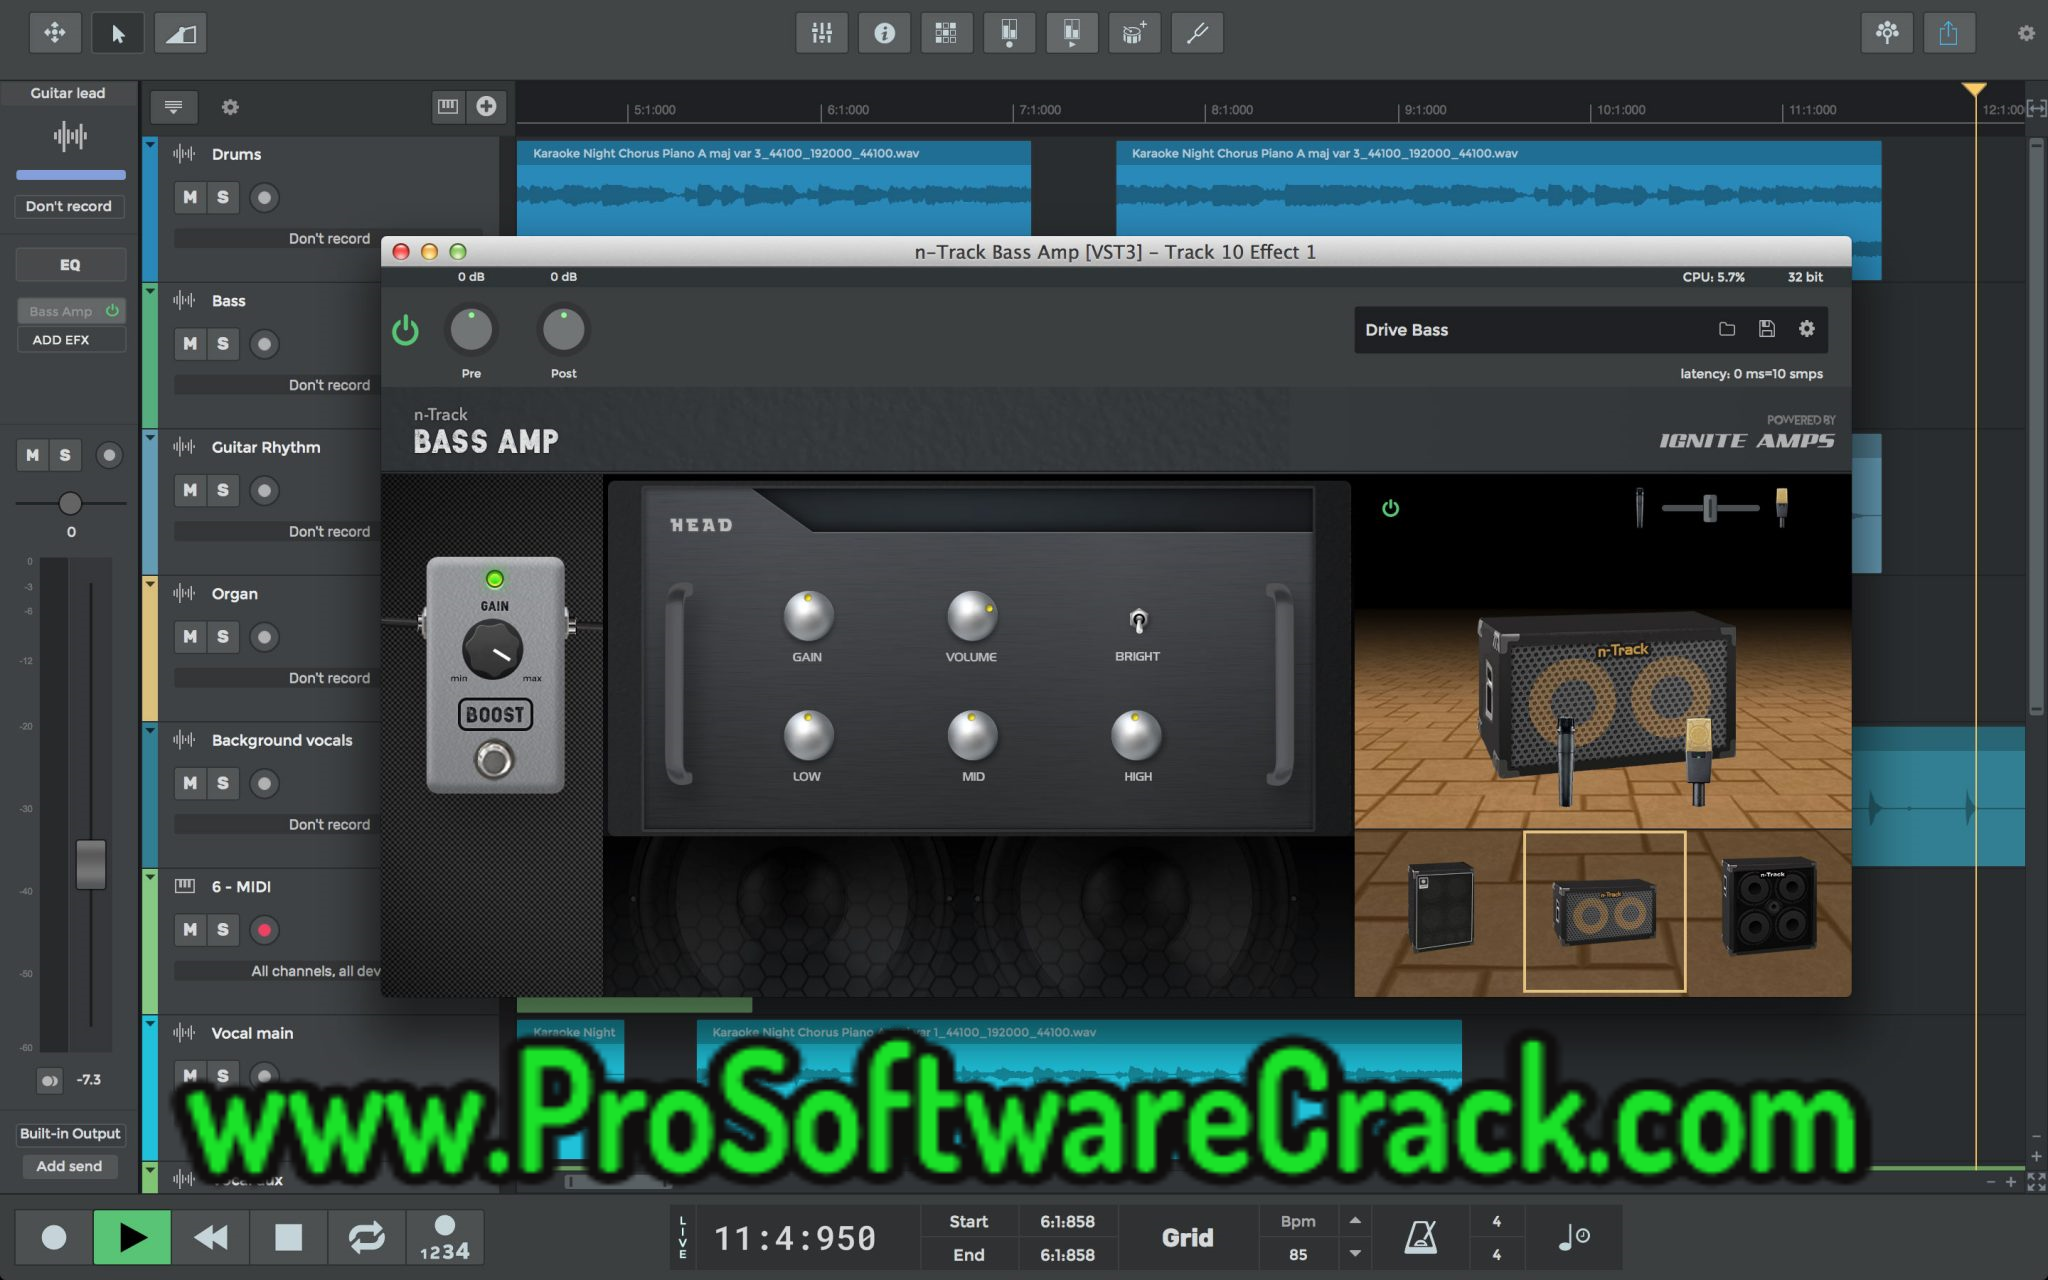 n-Track Studio Suite v9.1.6.5934 (x64) Multilingual + Crack Free Download